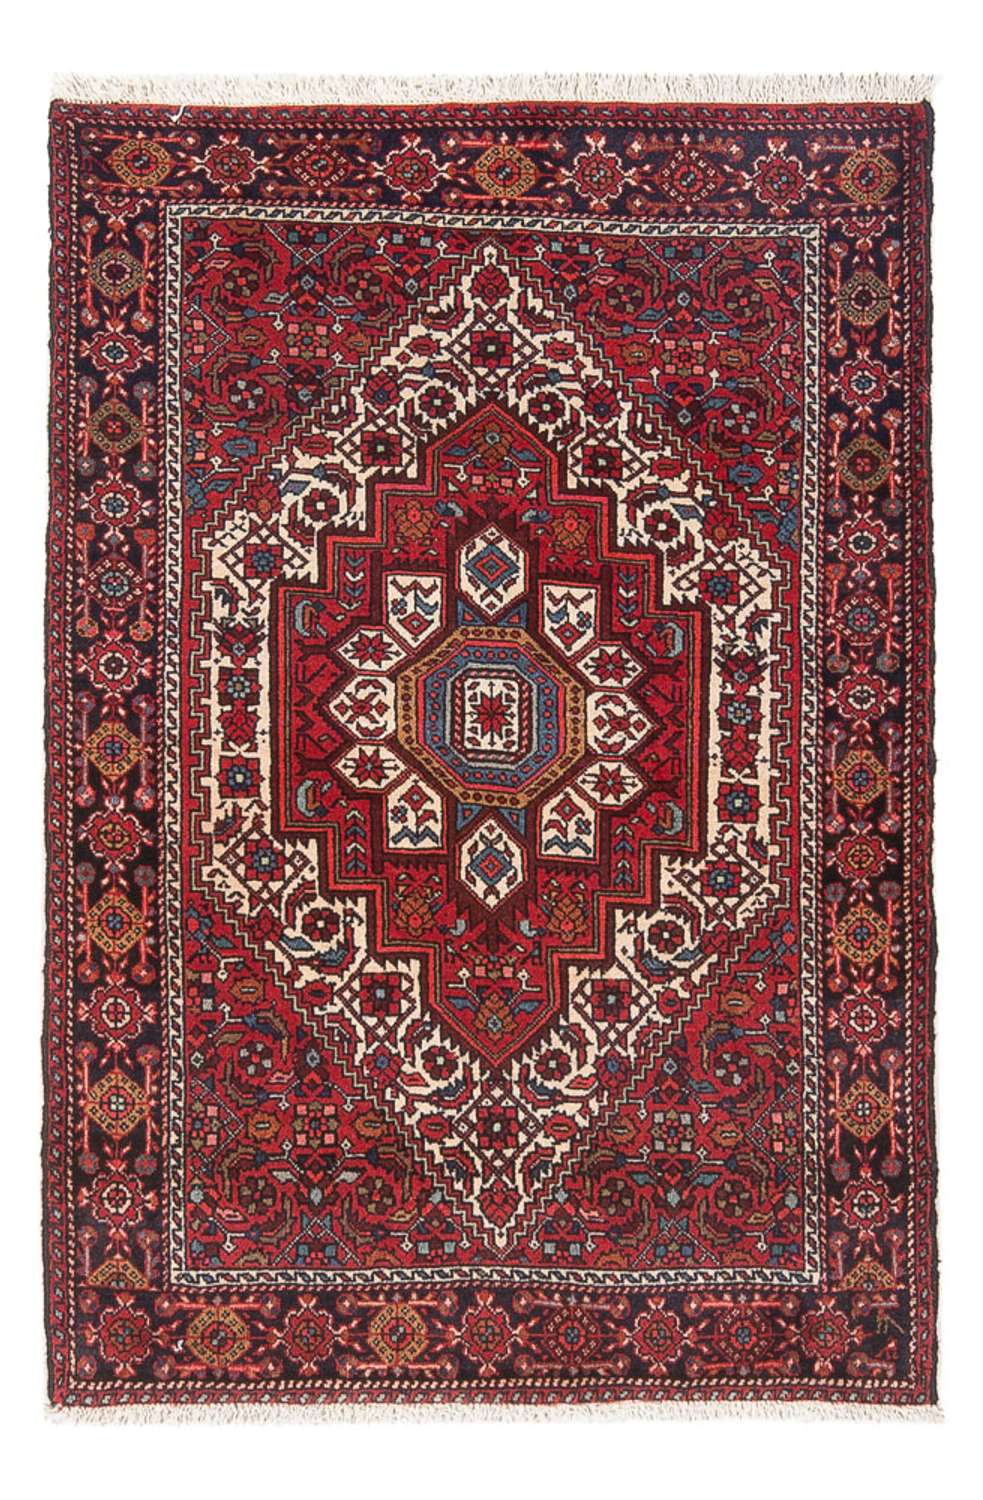 Alfombra persa - Nómada - 111 x 68 cm - rojo claro